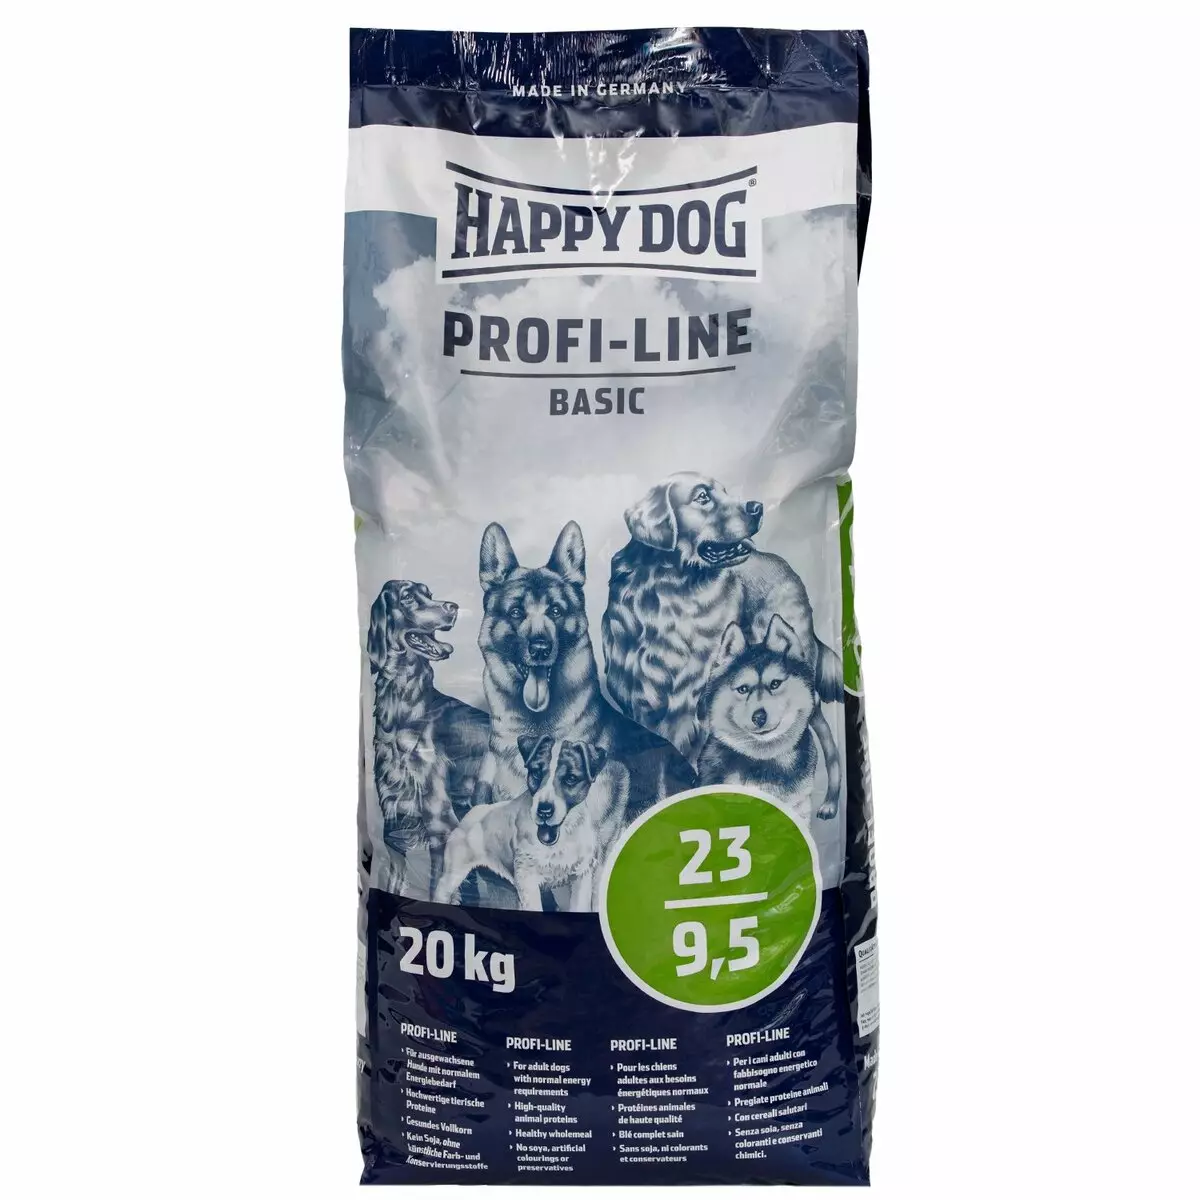 Alimentación do can de can feliz: seco e húmido, para cachorros de razas grandes, pequenas e medianas. Composición de conservas e outras fontes de cans, comentarios 22054_26